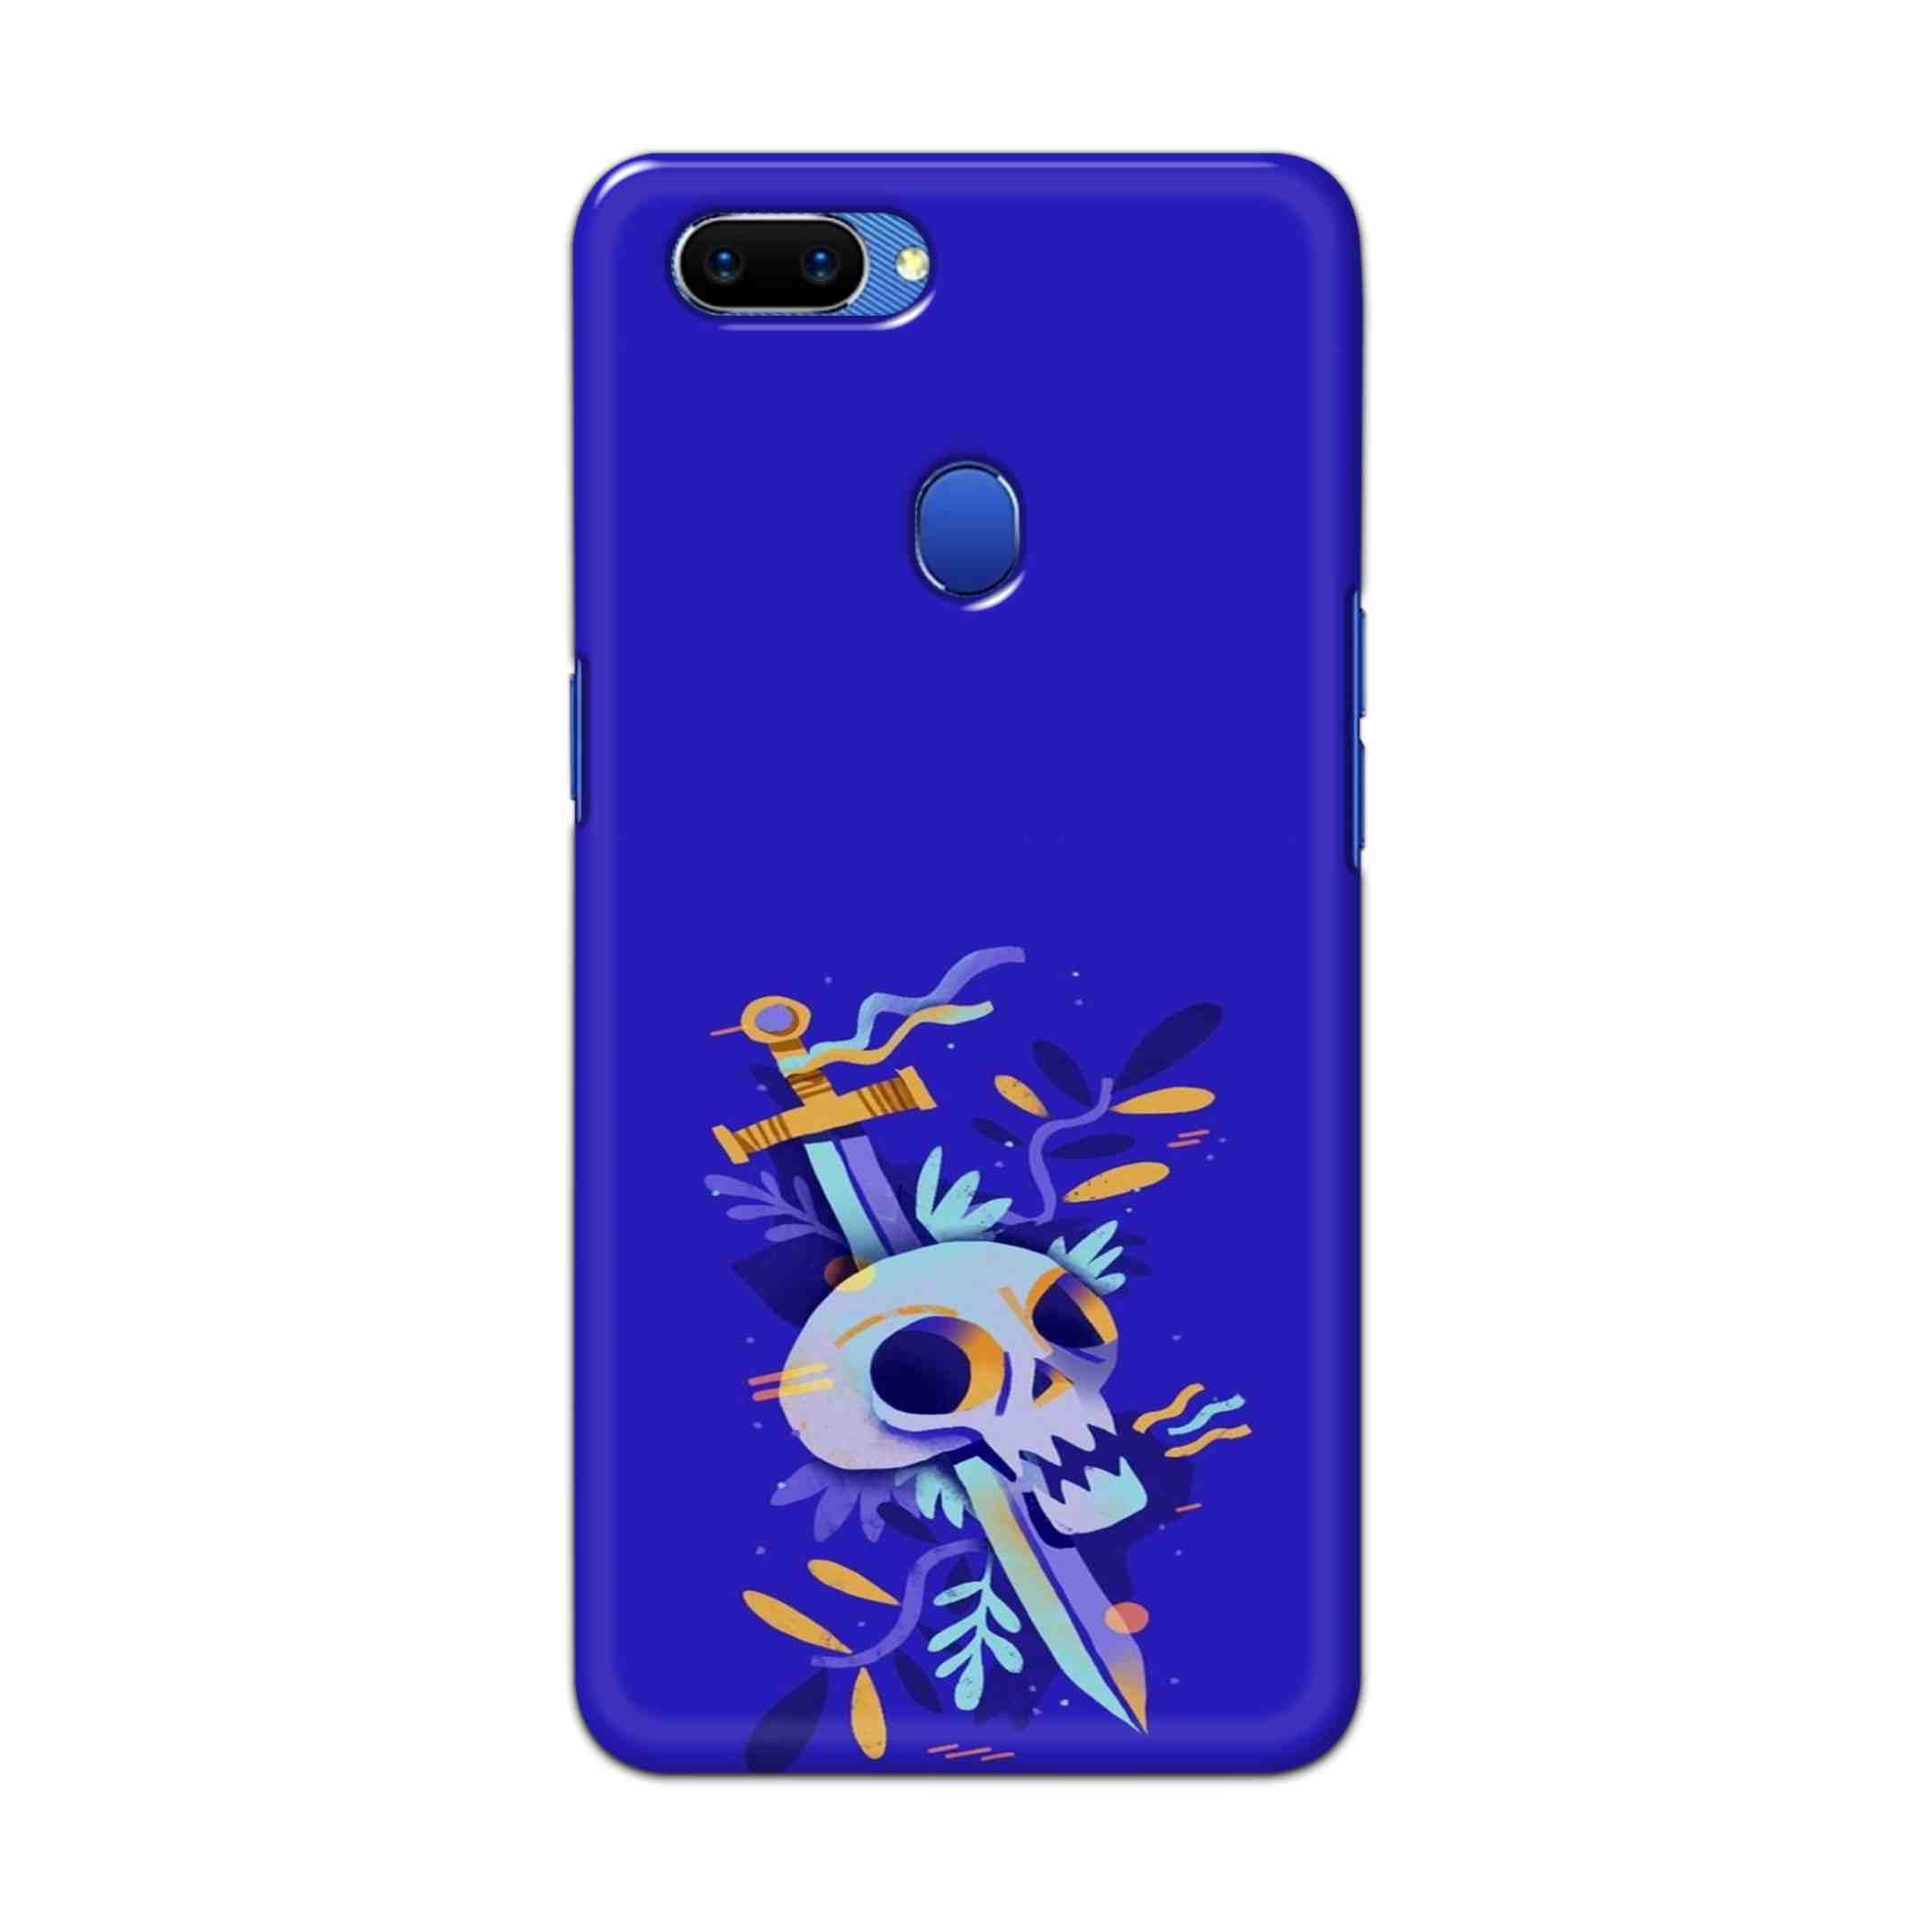 Buy Blue Skull Hard Back Mobile Phone Case Cover For Oppo A5 Online